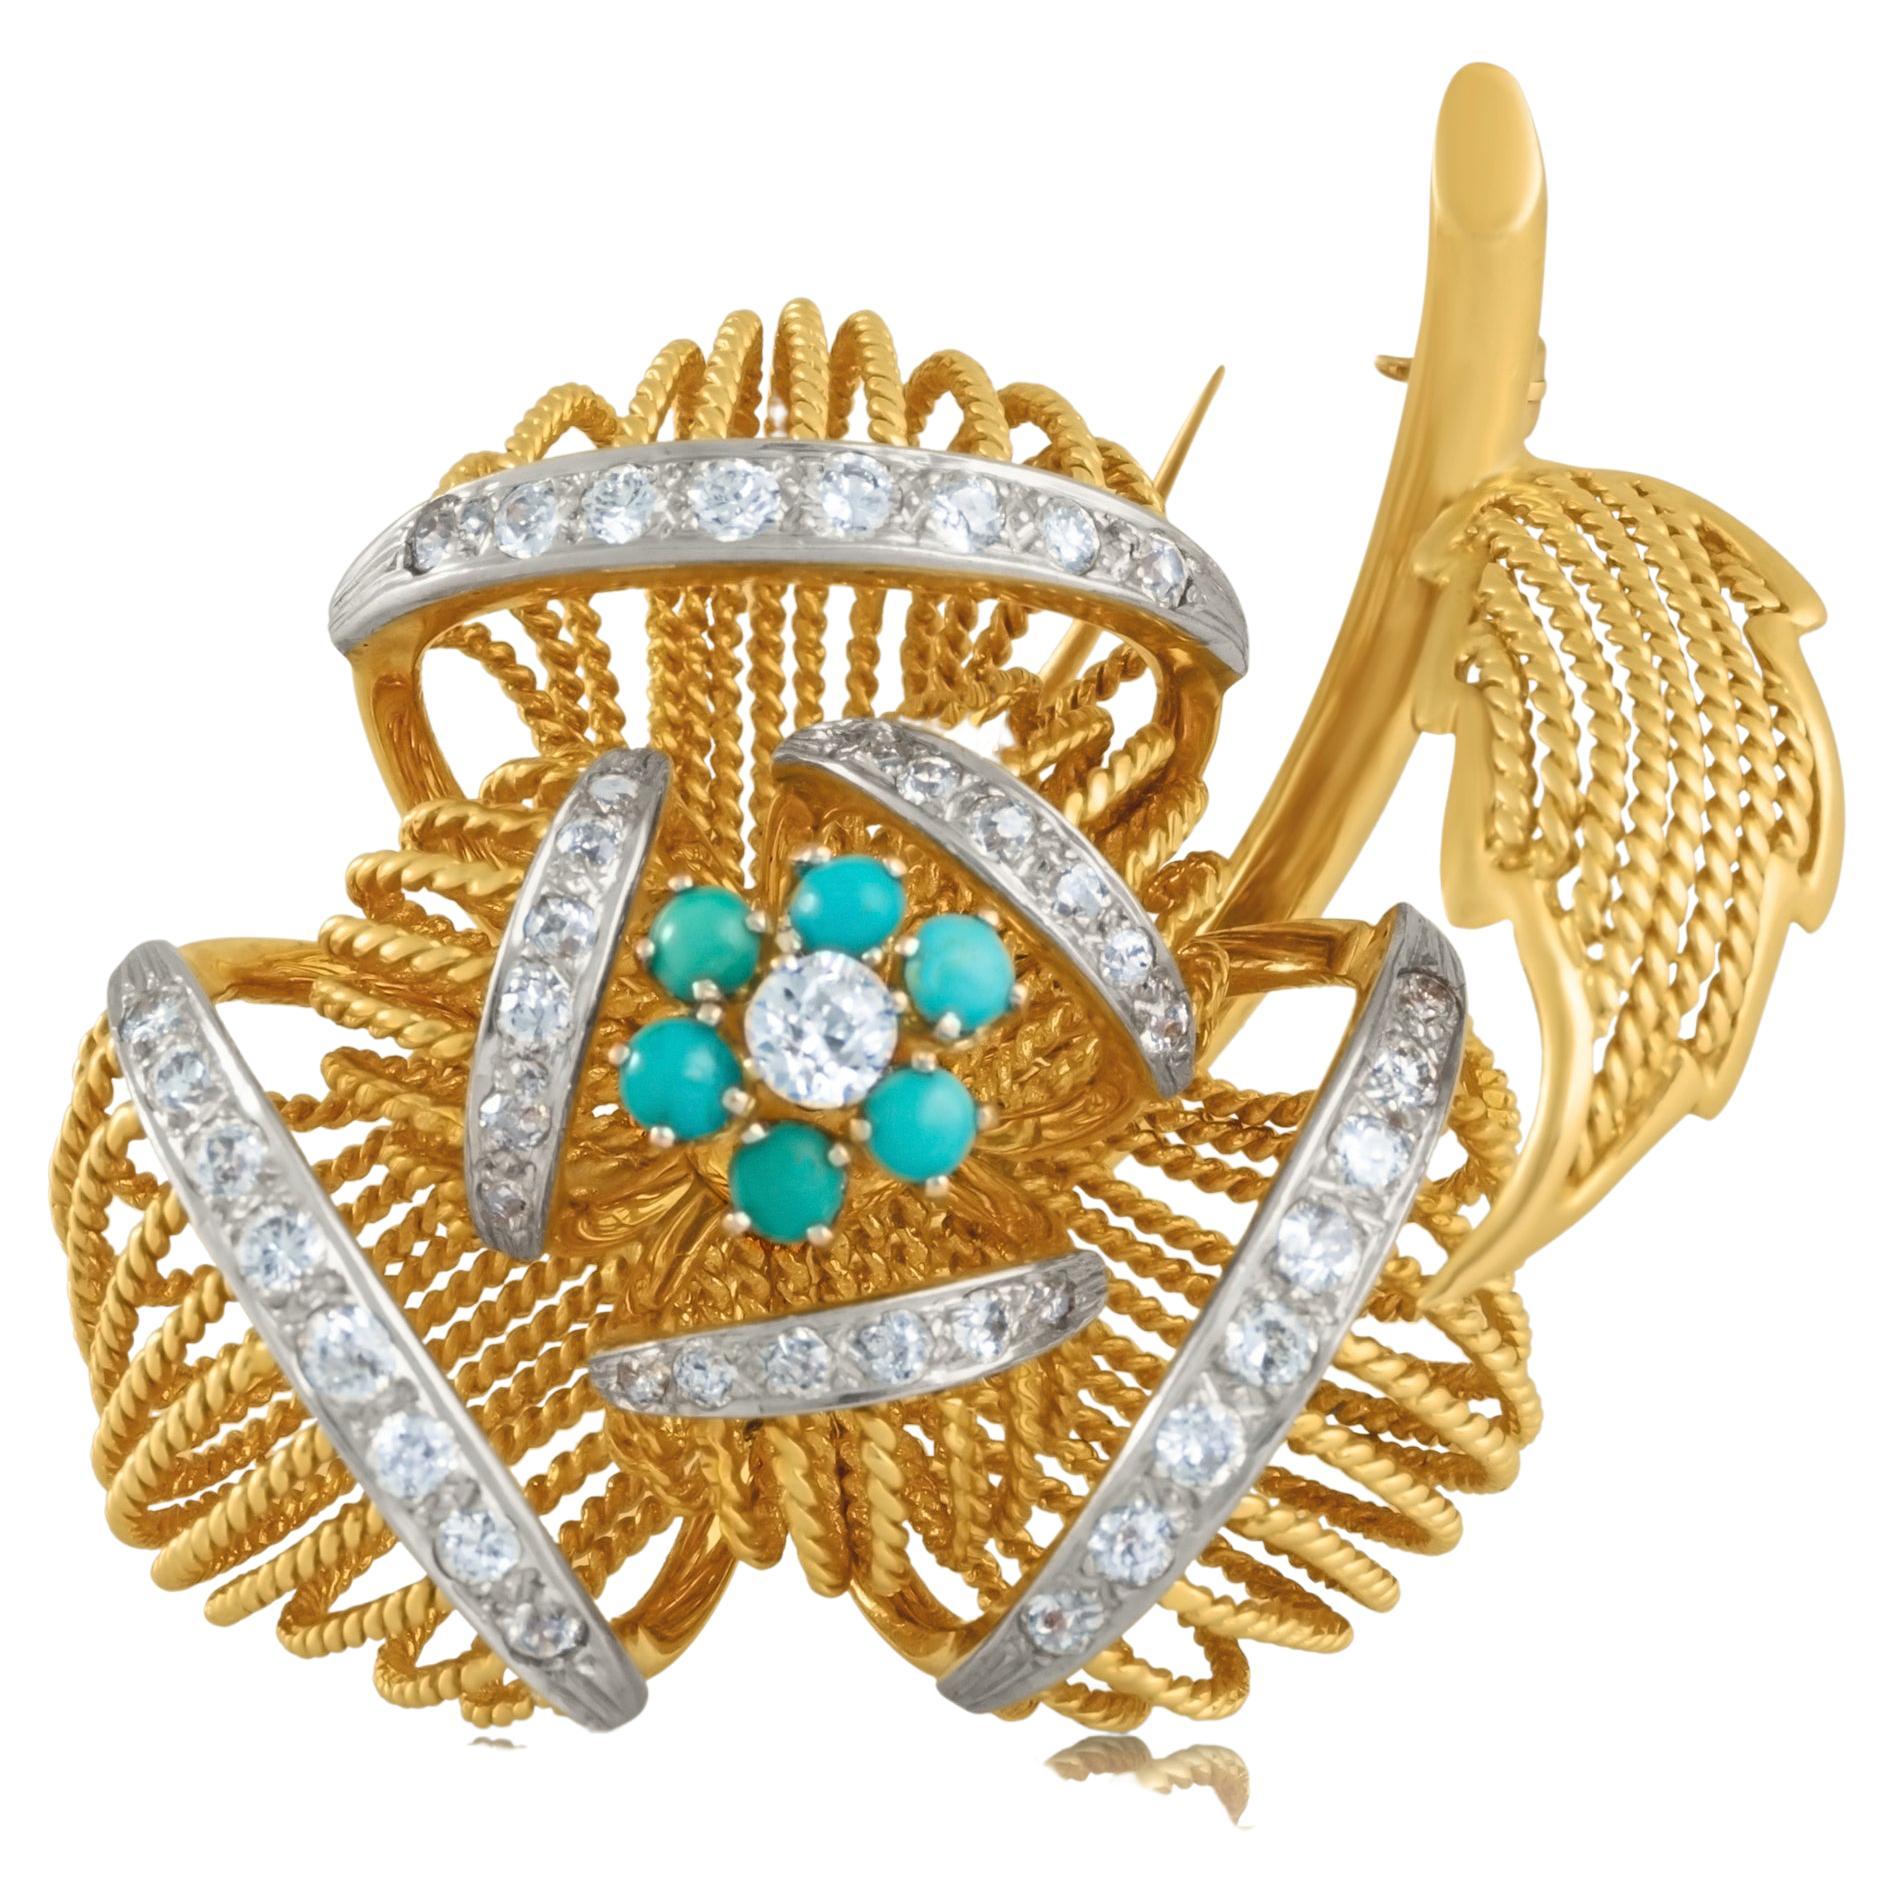 Blumenbrosche aus Gold und Platin /Fur Clip mit Türkis und Diamanten 